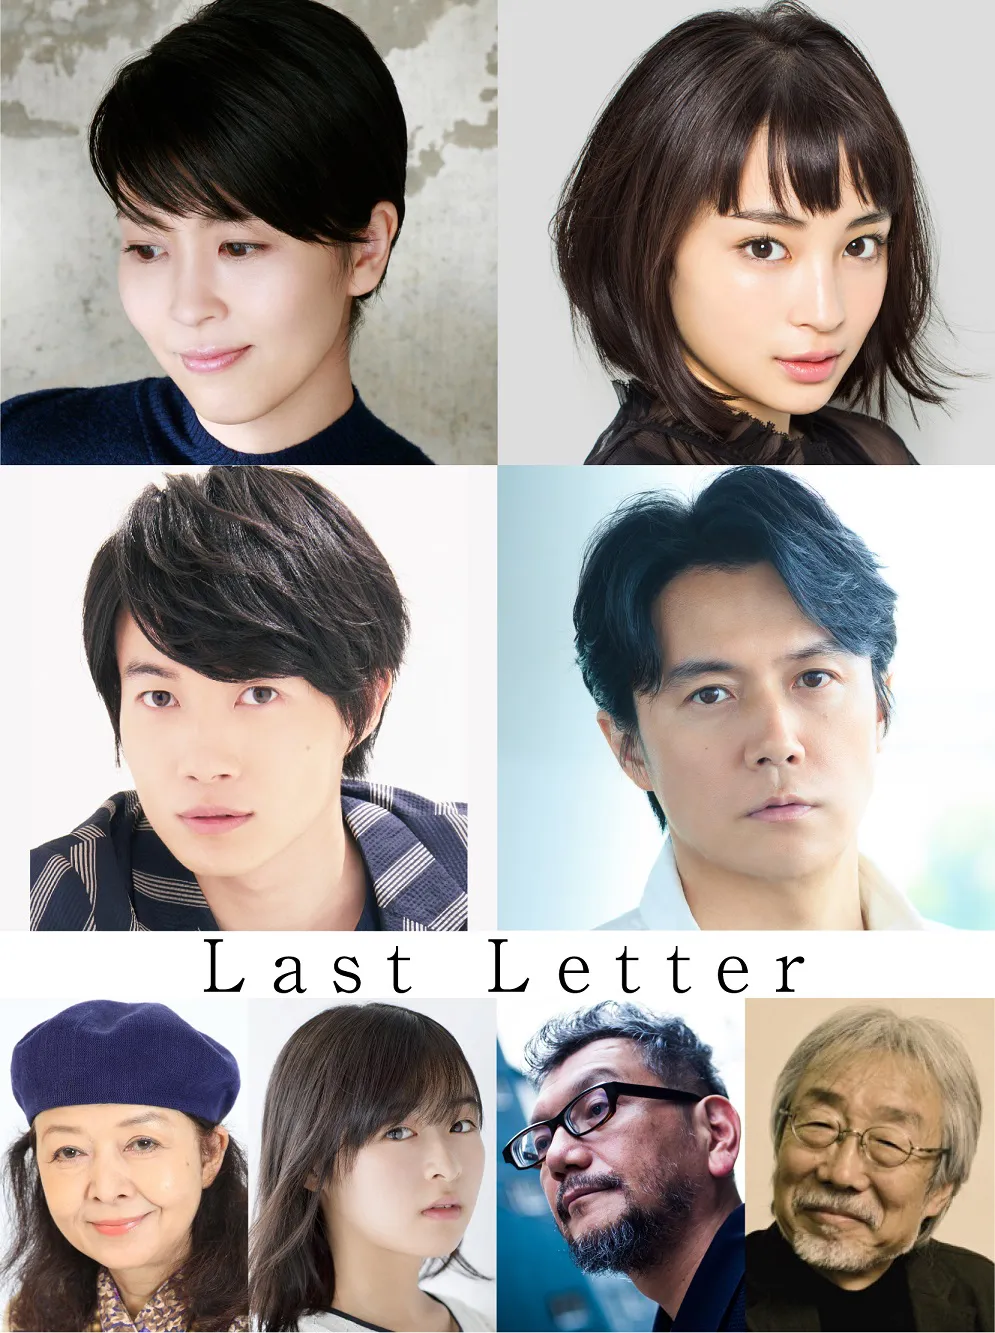 松たか子、広瀬すず、神木隆之介、福山雅治らが出演する映画「Last Letter」は、2019年公開予定